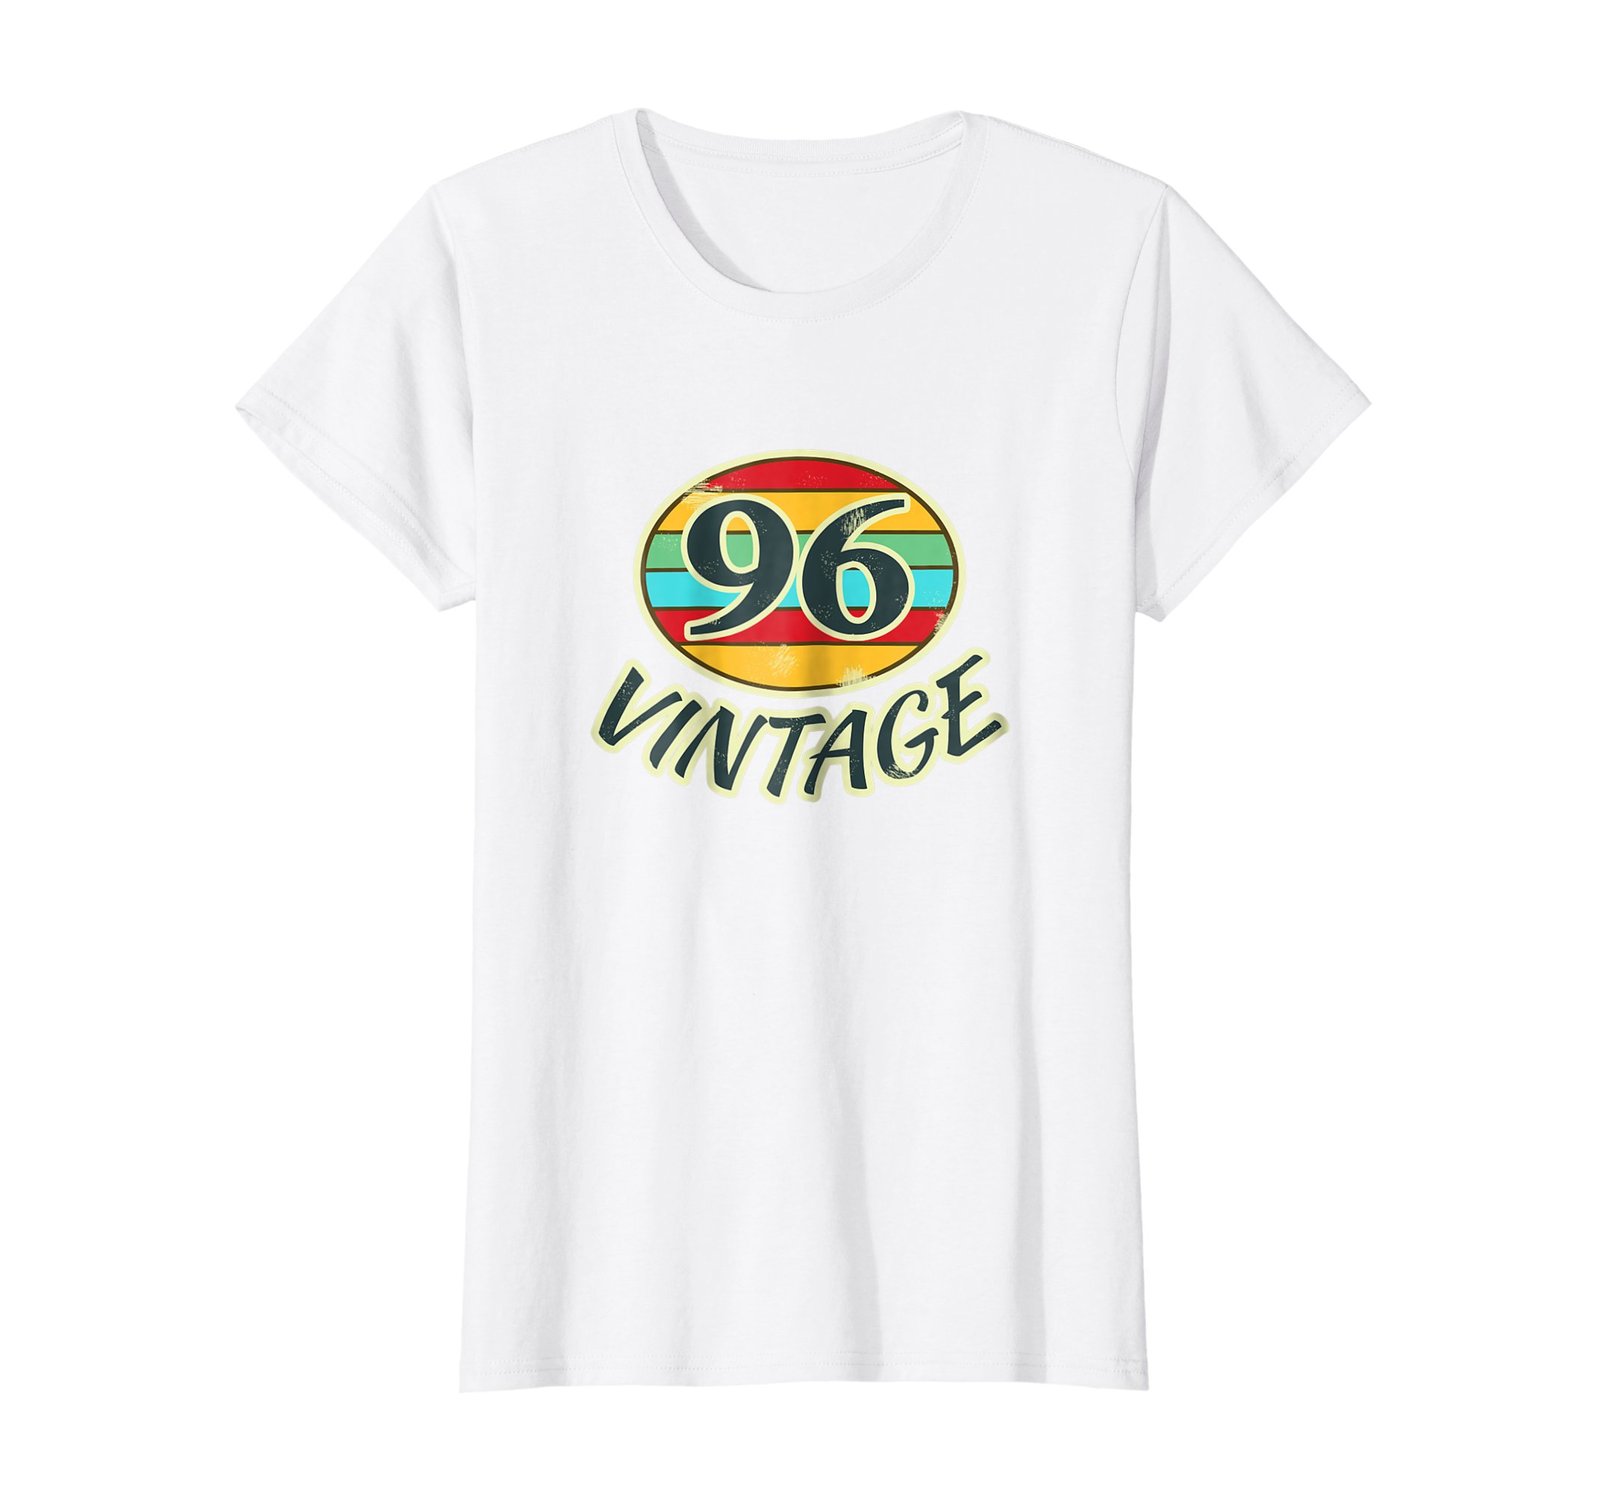 Funny Shirts - DOB 1996 TShirt Vintage Retro 96 Birth Year Tee Shirt Wowen